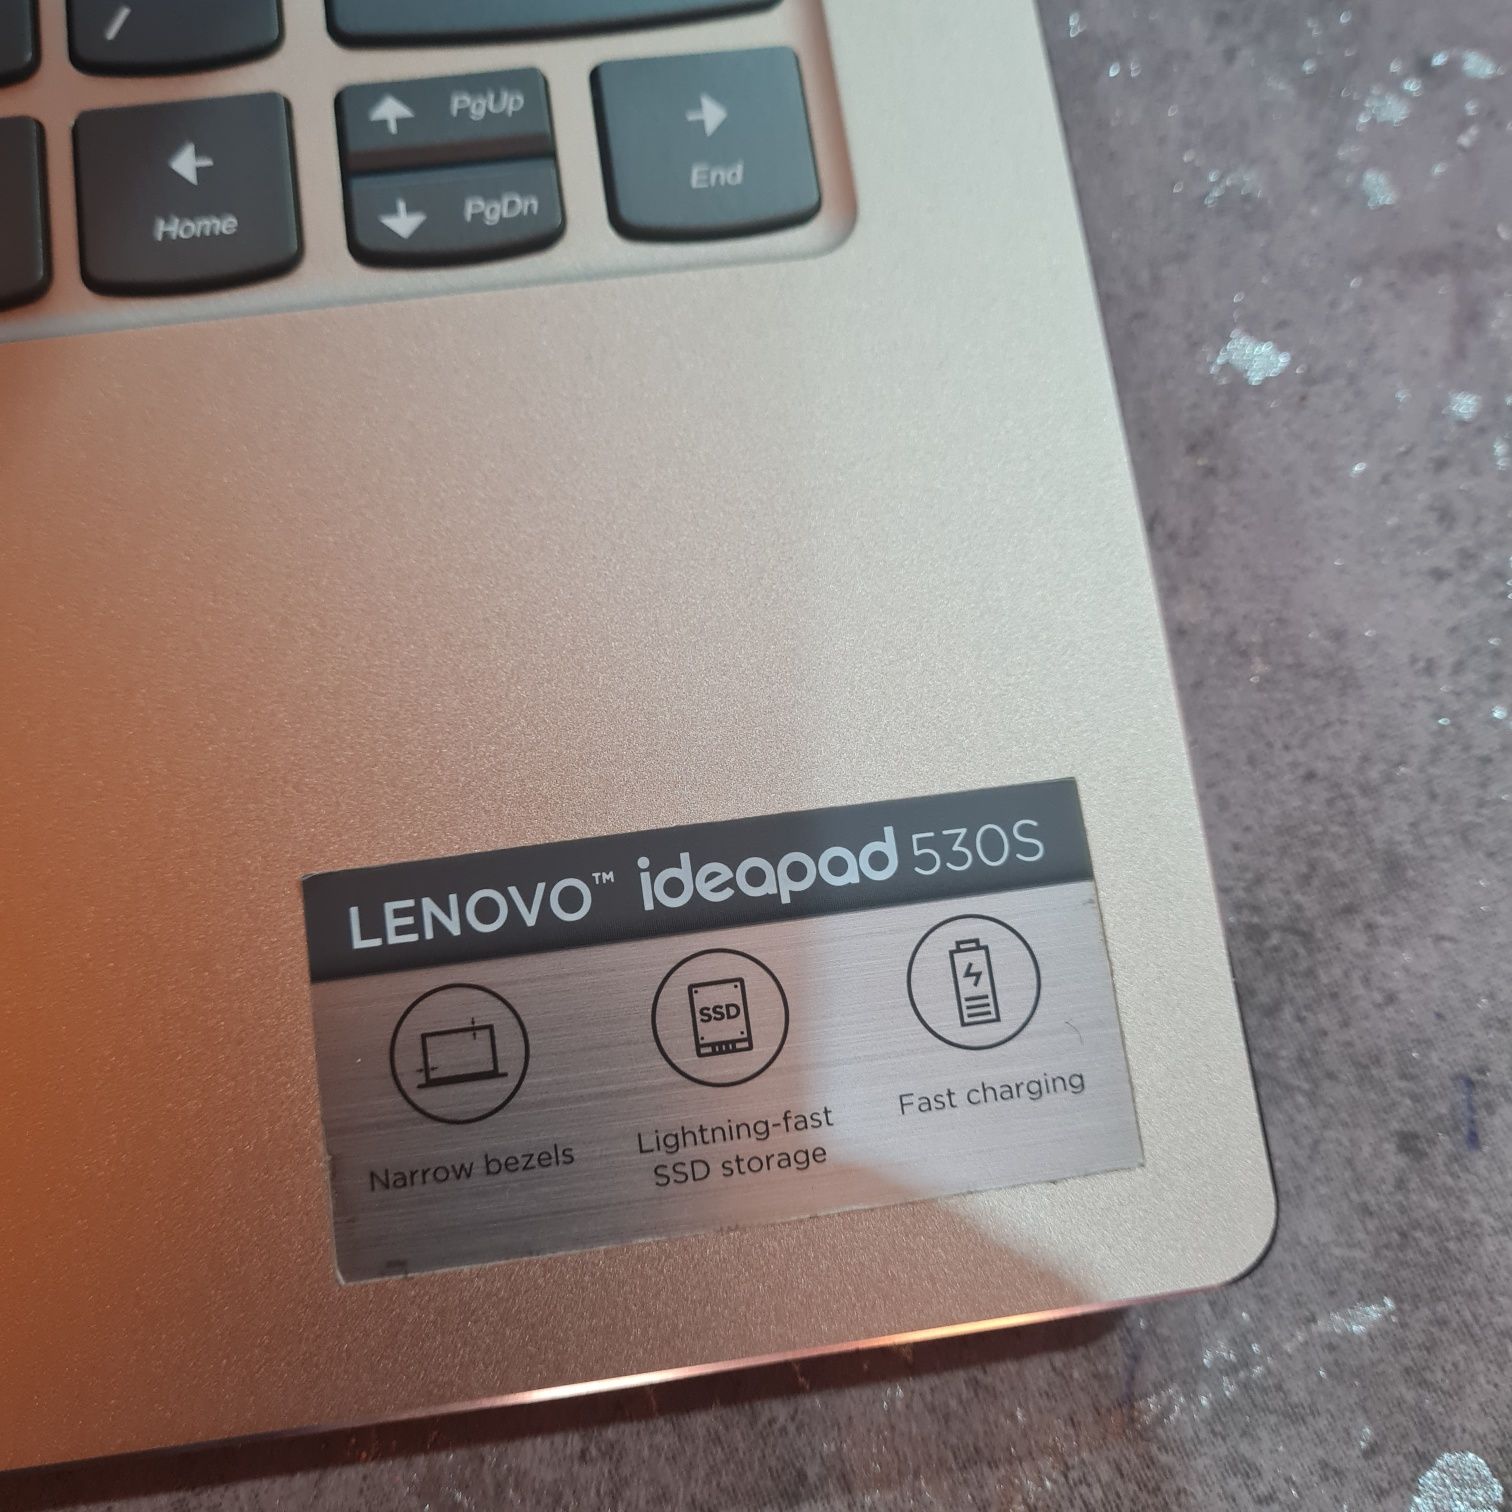 Lenovo ultrabook 530s